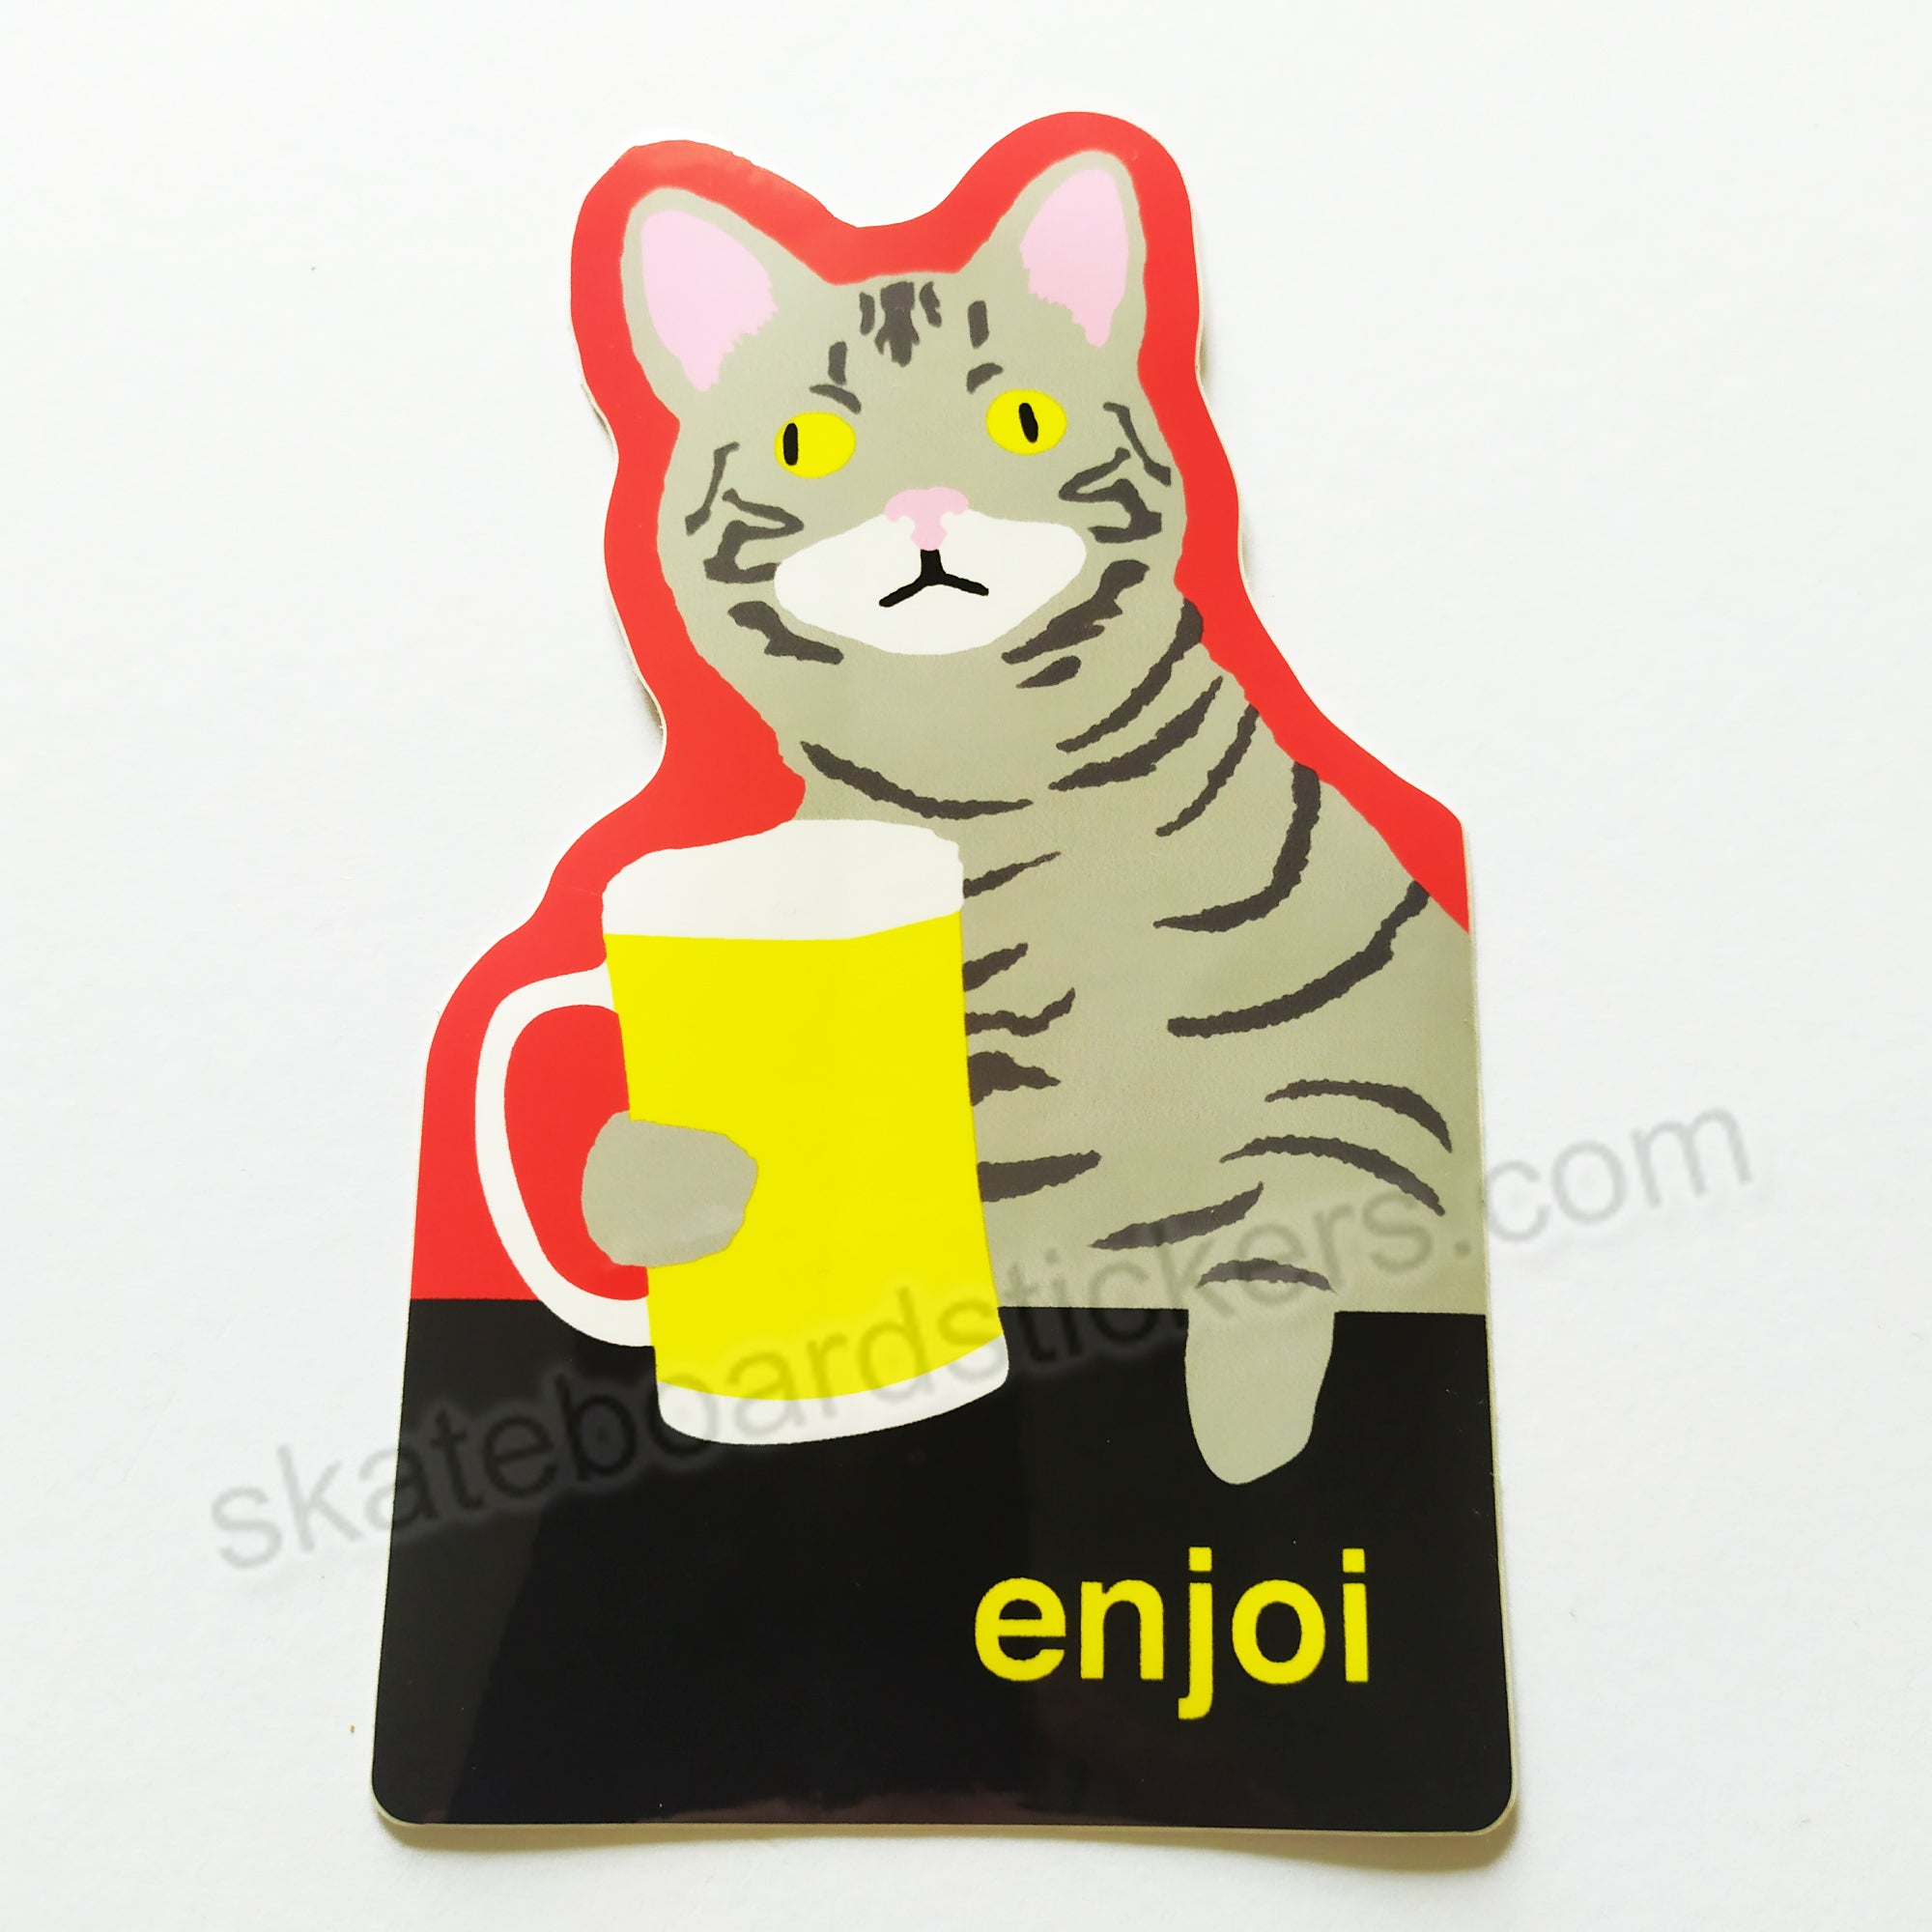 Enjoi Skateboard Sticker - "Drinking Cat"